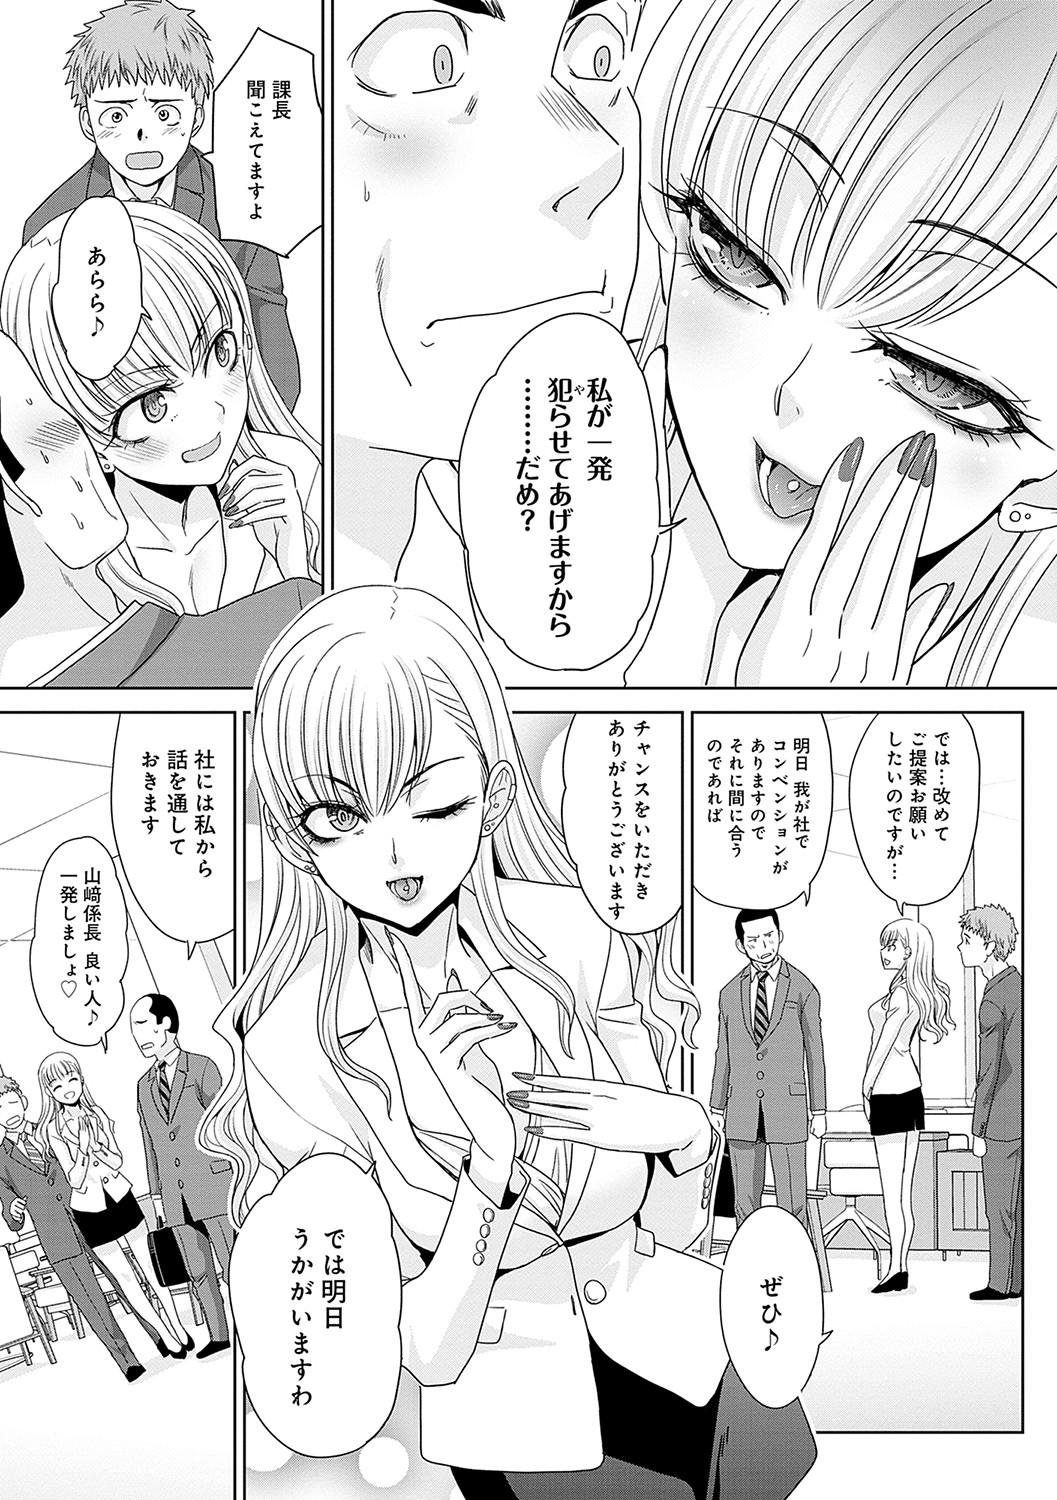 Penetration Tsukiyono Kachou wa Gal o Yamerarenai - Tsukiyono The manager can't quit a gal Trio - Page 6